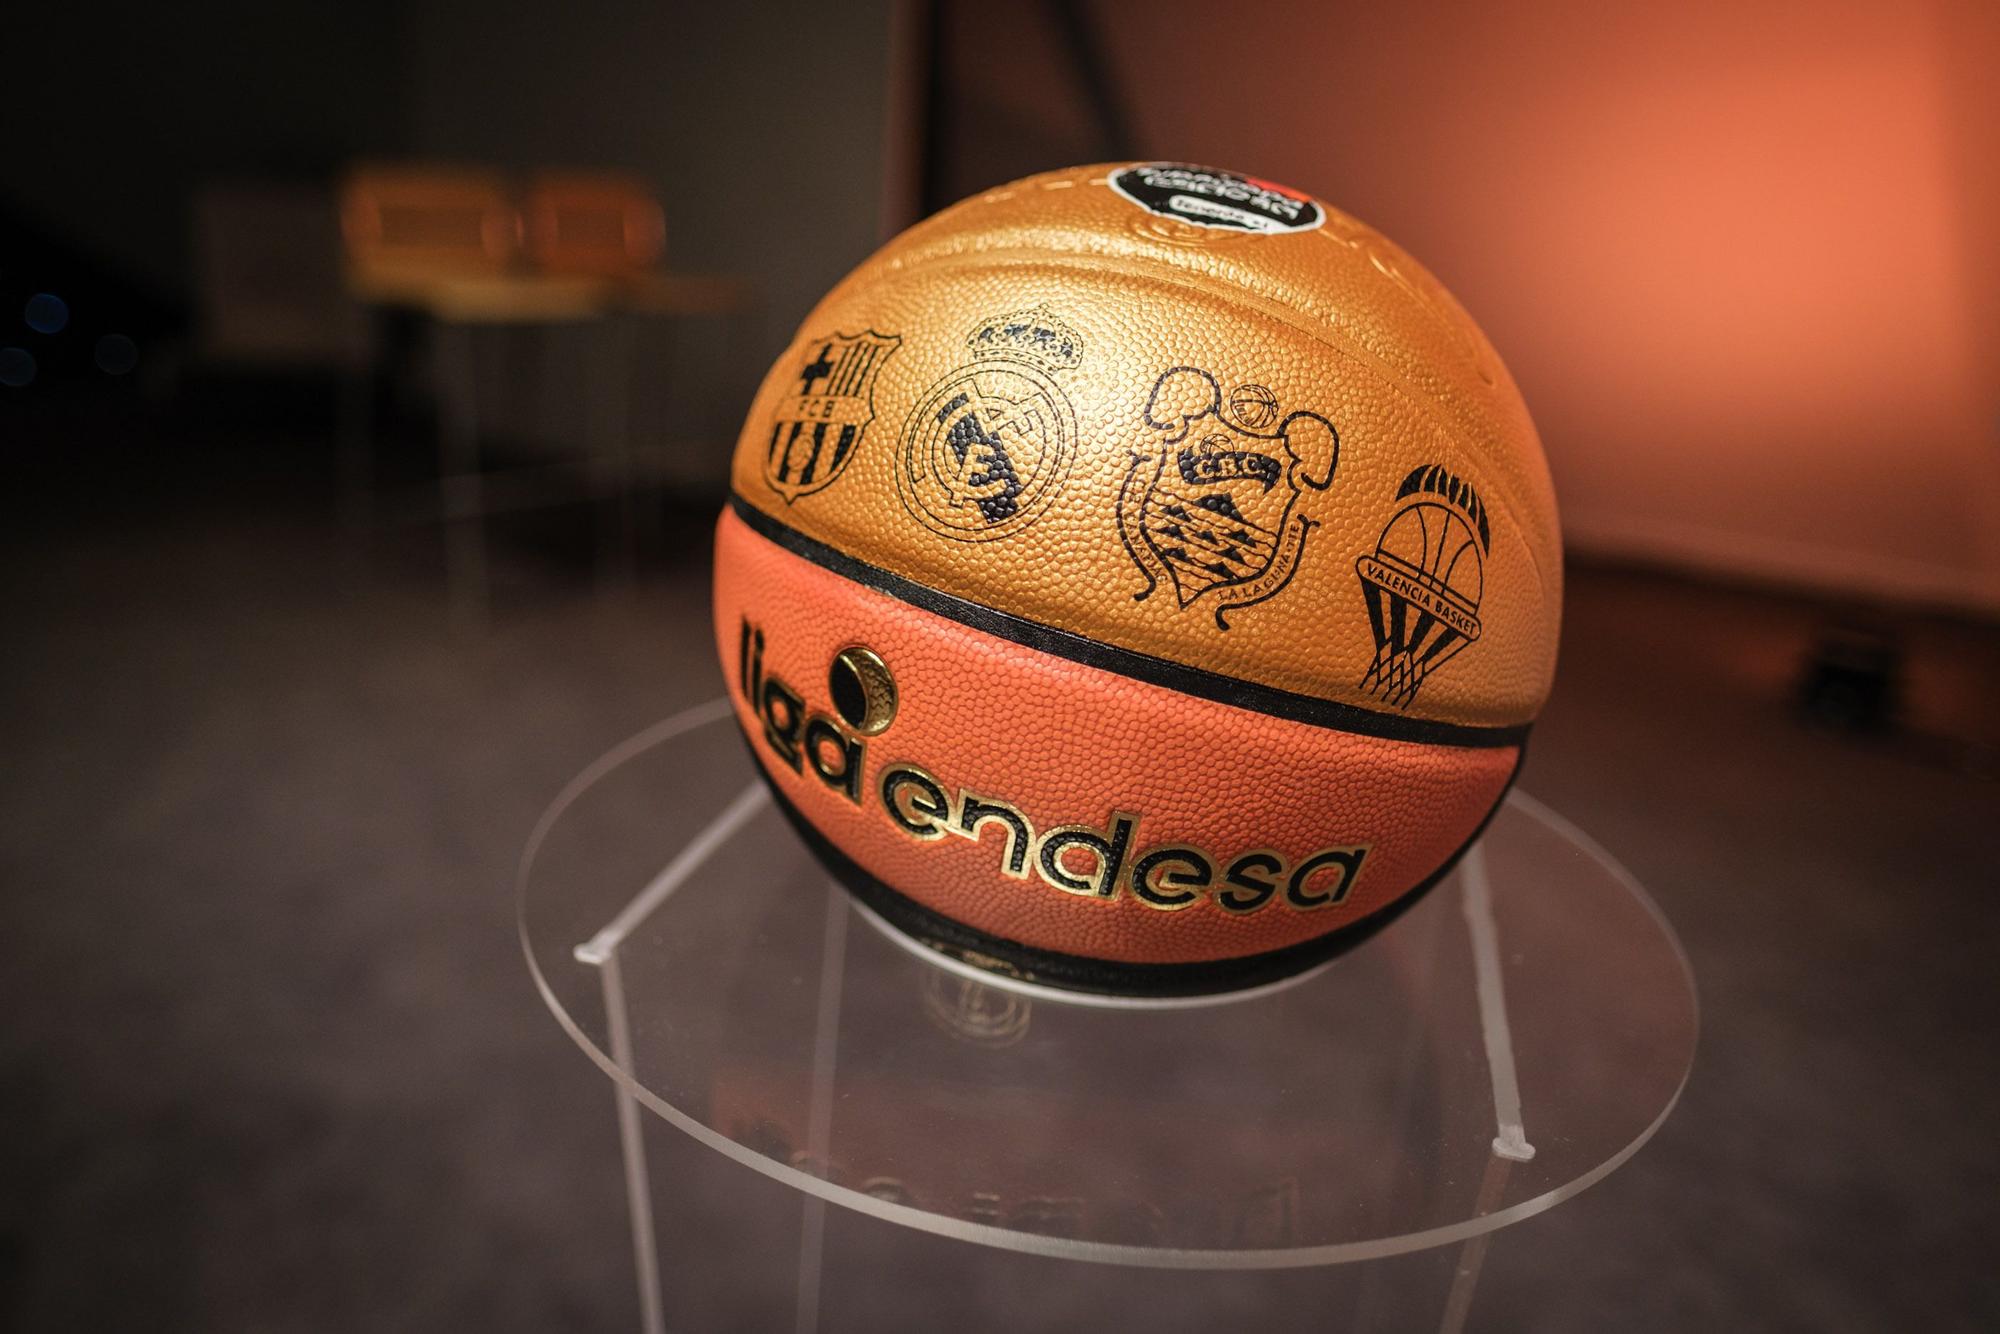 Presentación de la Supercopa de baloncesto en Tenerife